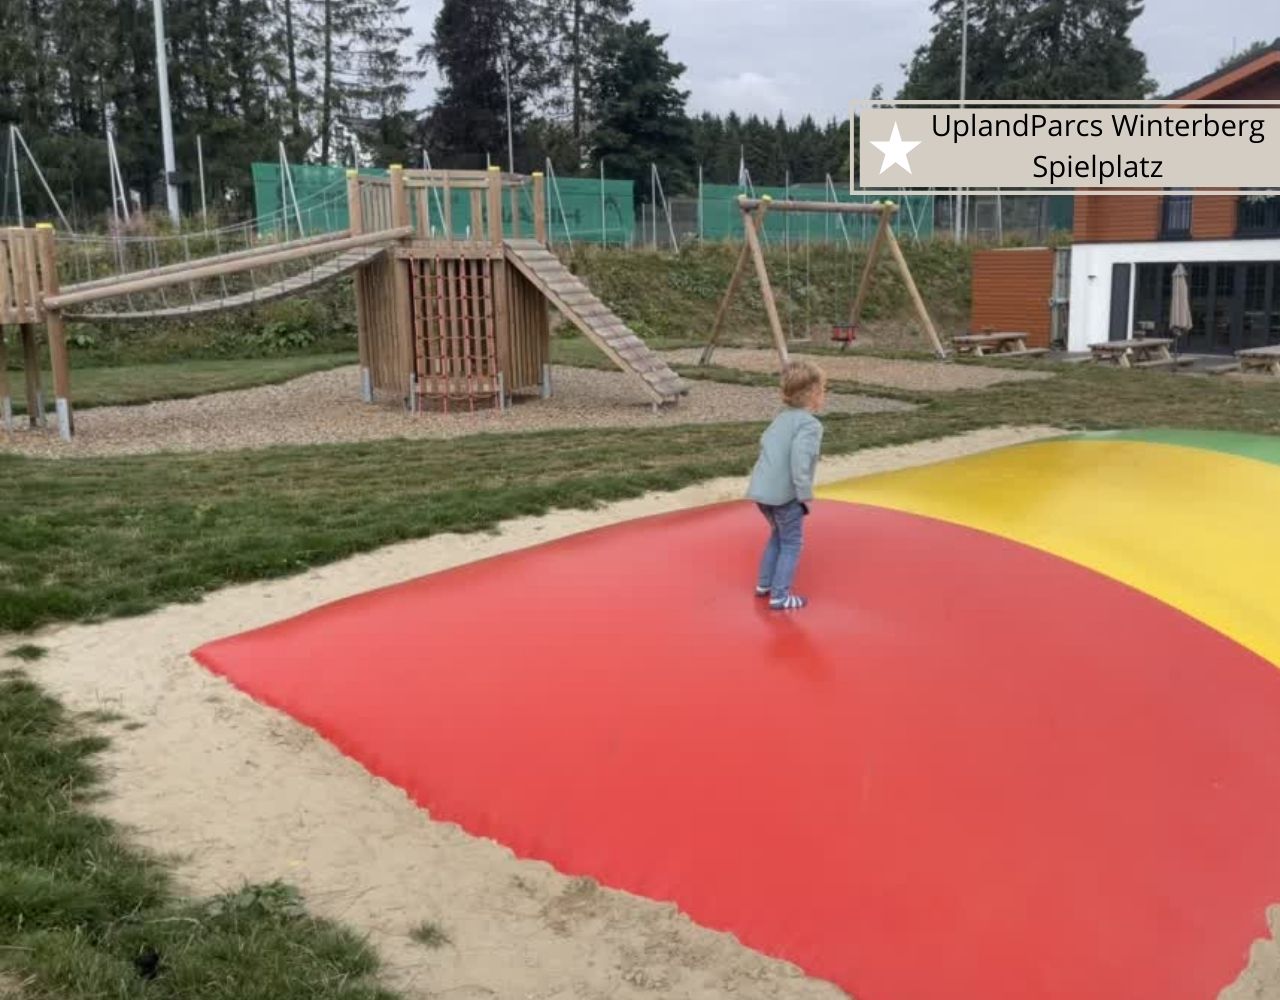 Ferienparks in Winterberg -Uplandparcs mit Spielplatz für kleine Kinder